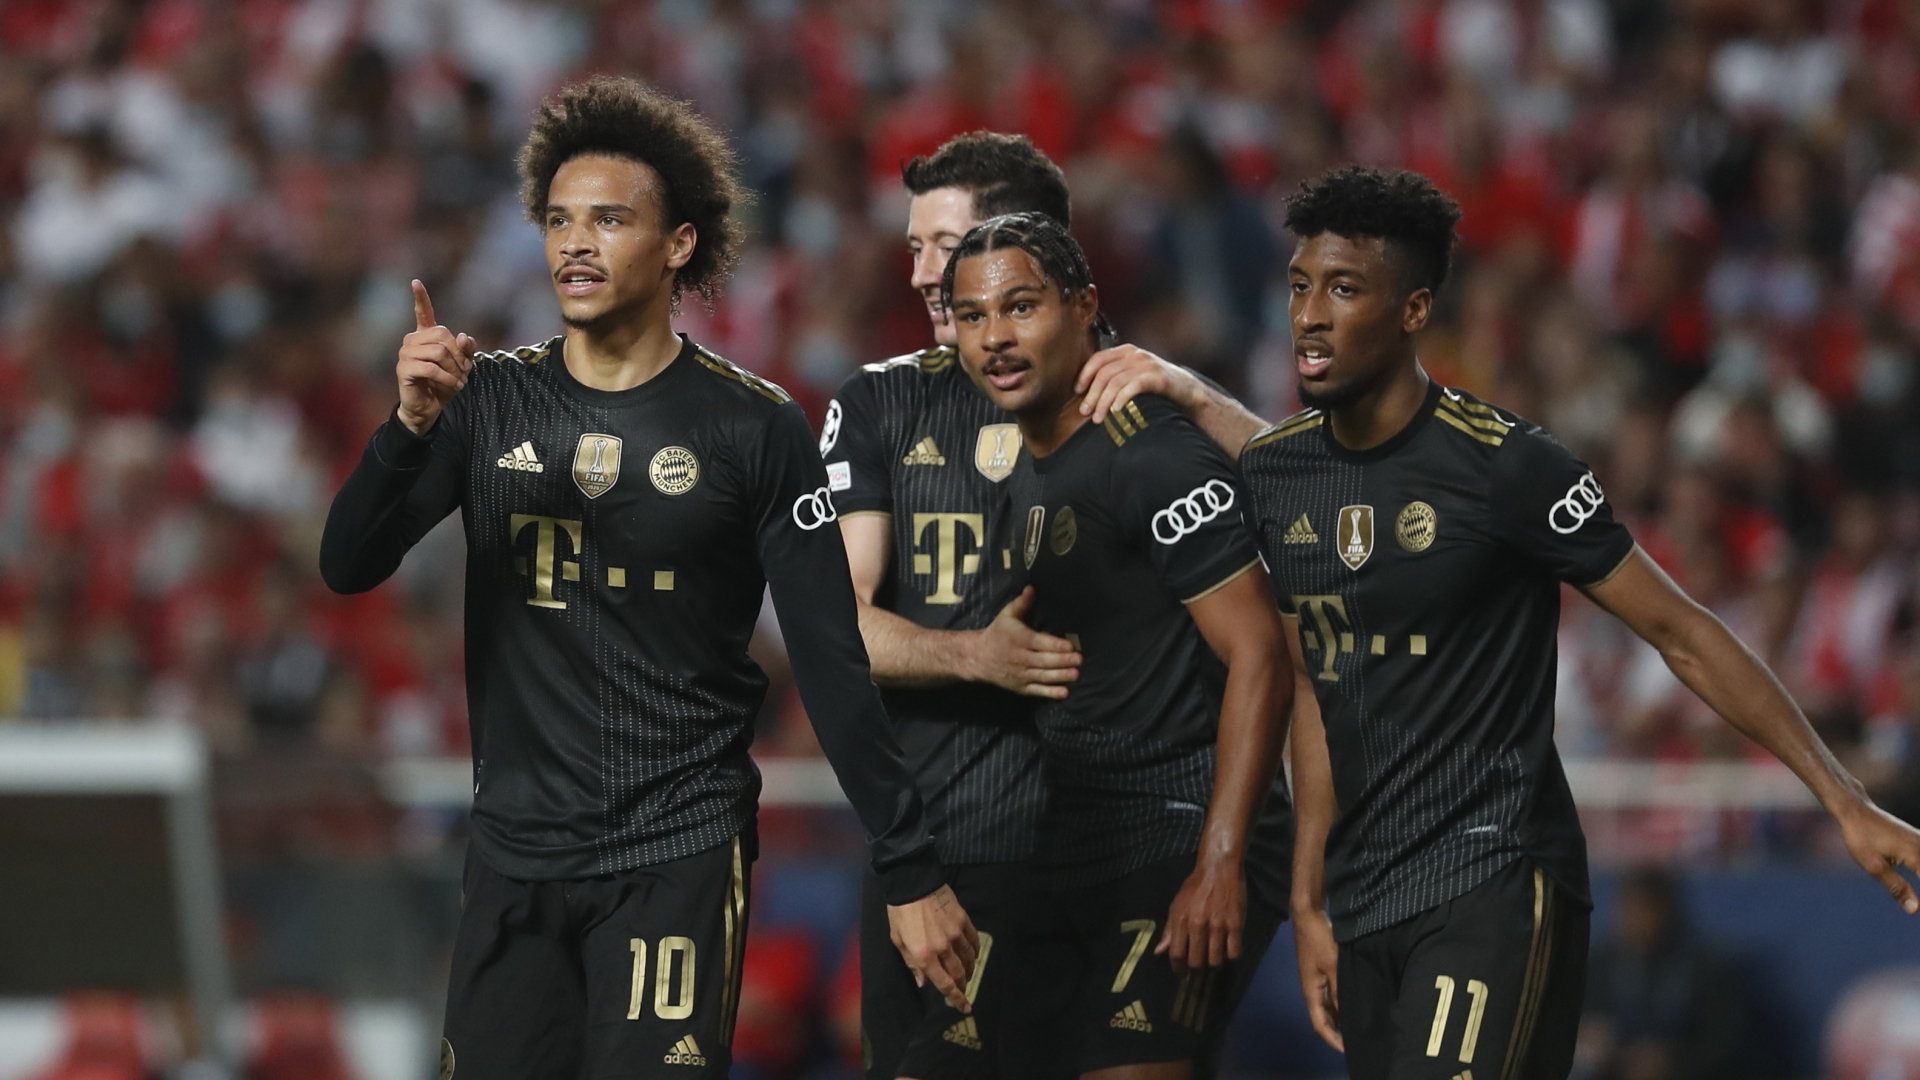 Spieler von Bayern München jubeln nach dem Spielende. | REUTERS